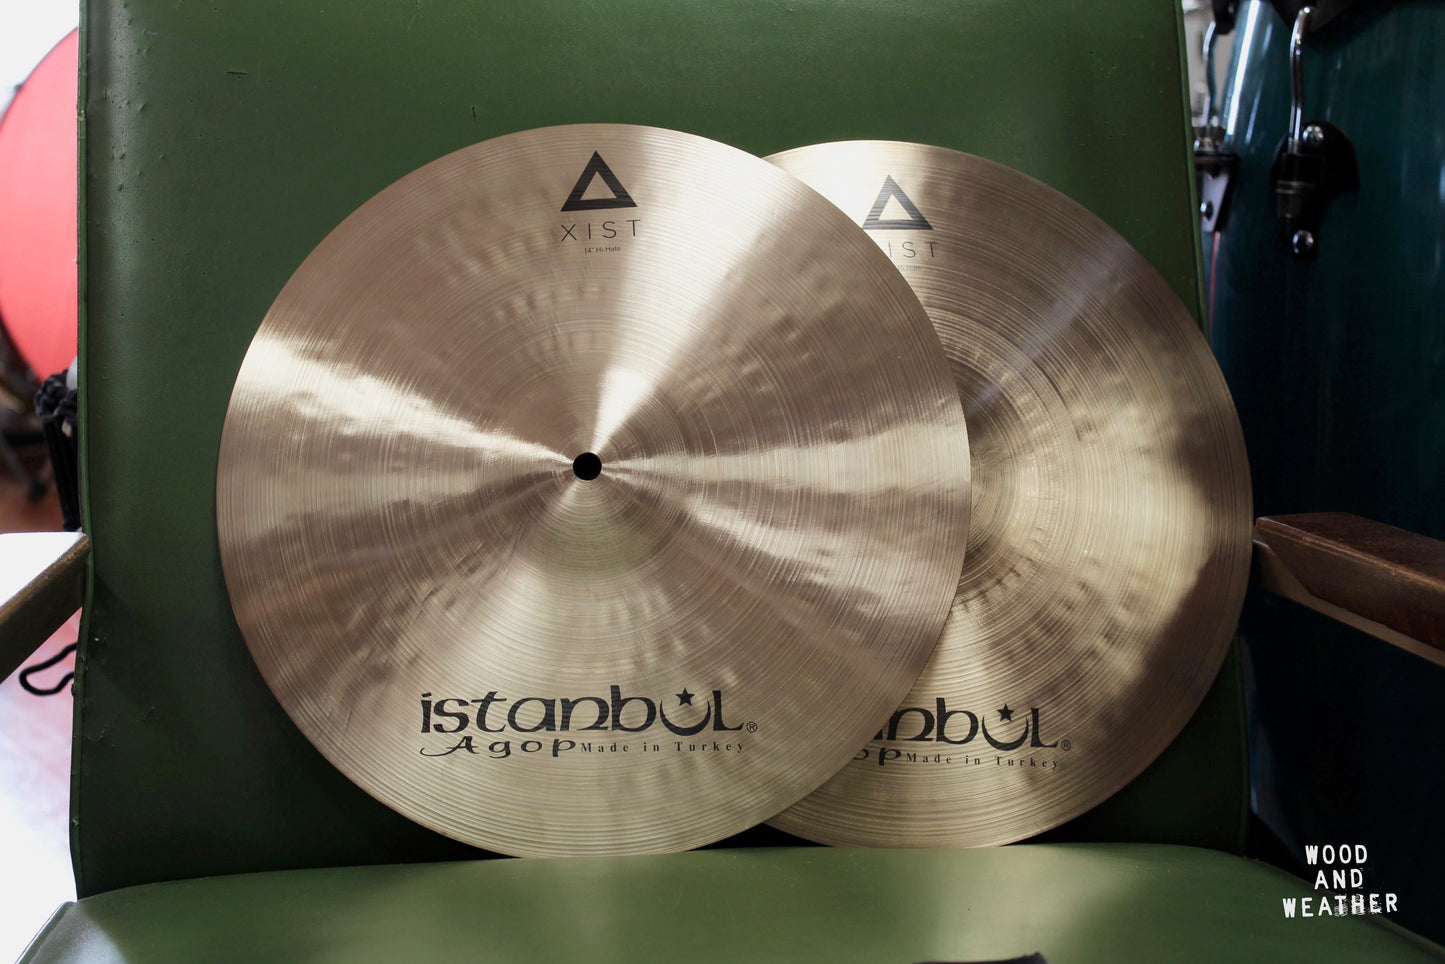 Istanbul Agop 14" Xist Natural Hi-Hat Cymbals 995/1205g